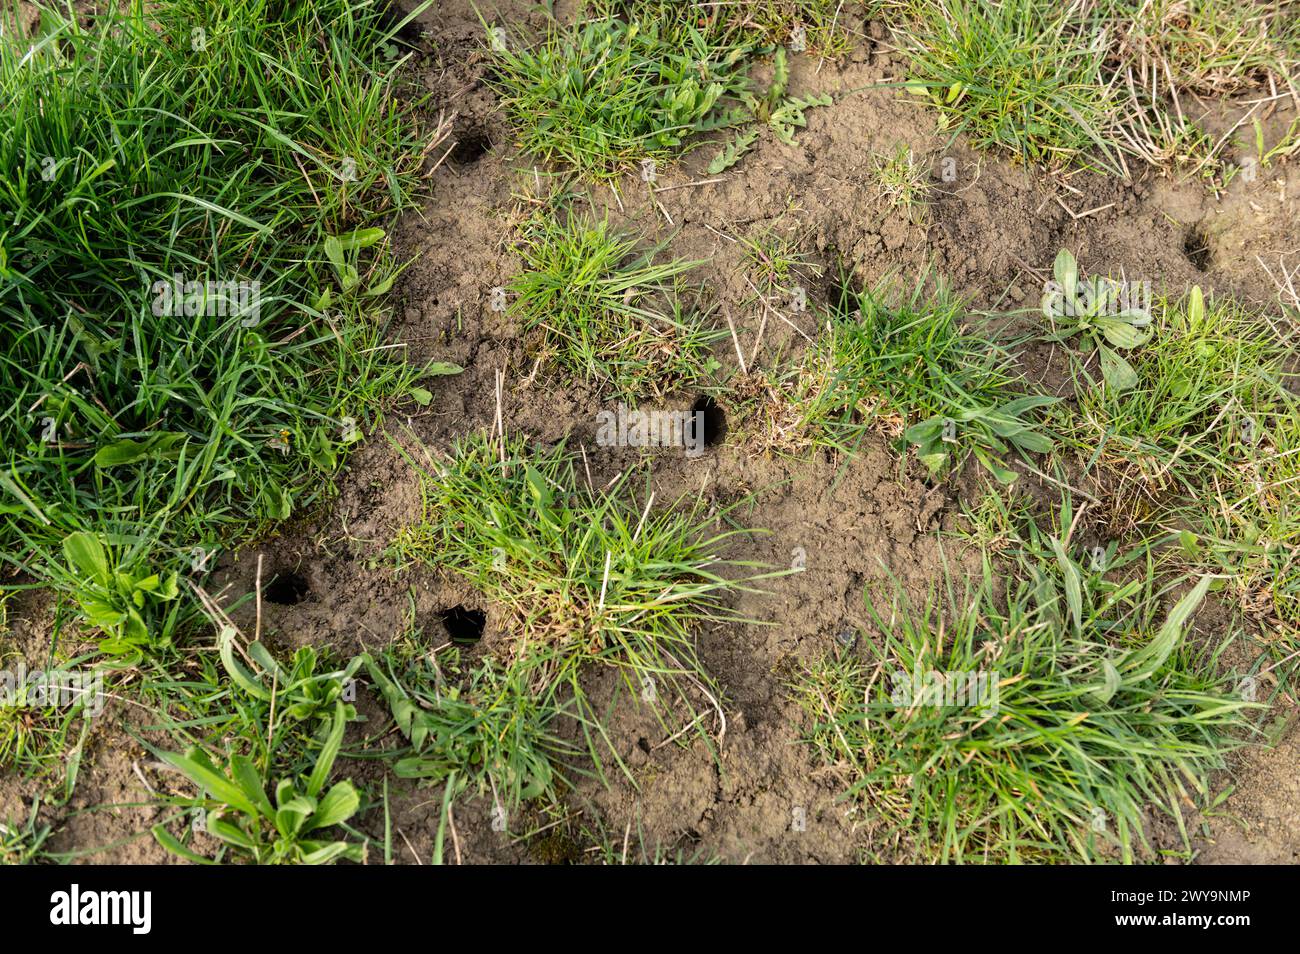 Mäuselöcher sind auf einer Wiese zu sehen. Rottweil Baden-Württemberg Deutschland *** Mouse holes can be seen in a meadow Rottweil Baden Württemberg Germany Stock Photo